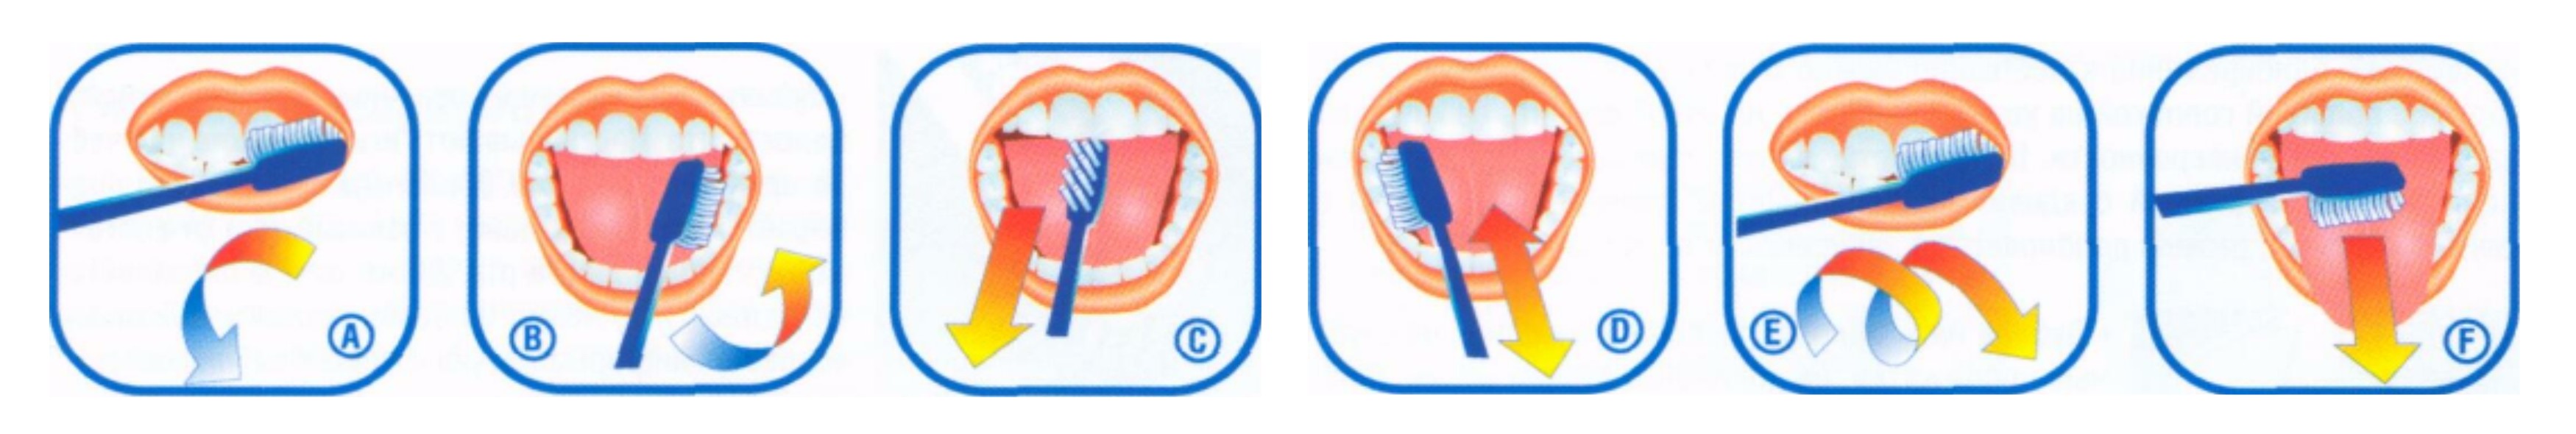 Можно греть зуб. Схема правильной чистки зубов. Схема чистки зубов для детей. Схема чистки зубов для дошкольников. Схема как правильно чистить зубы.